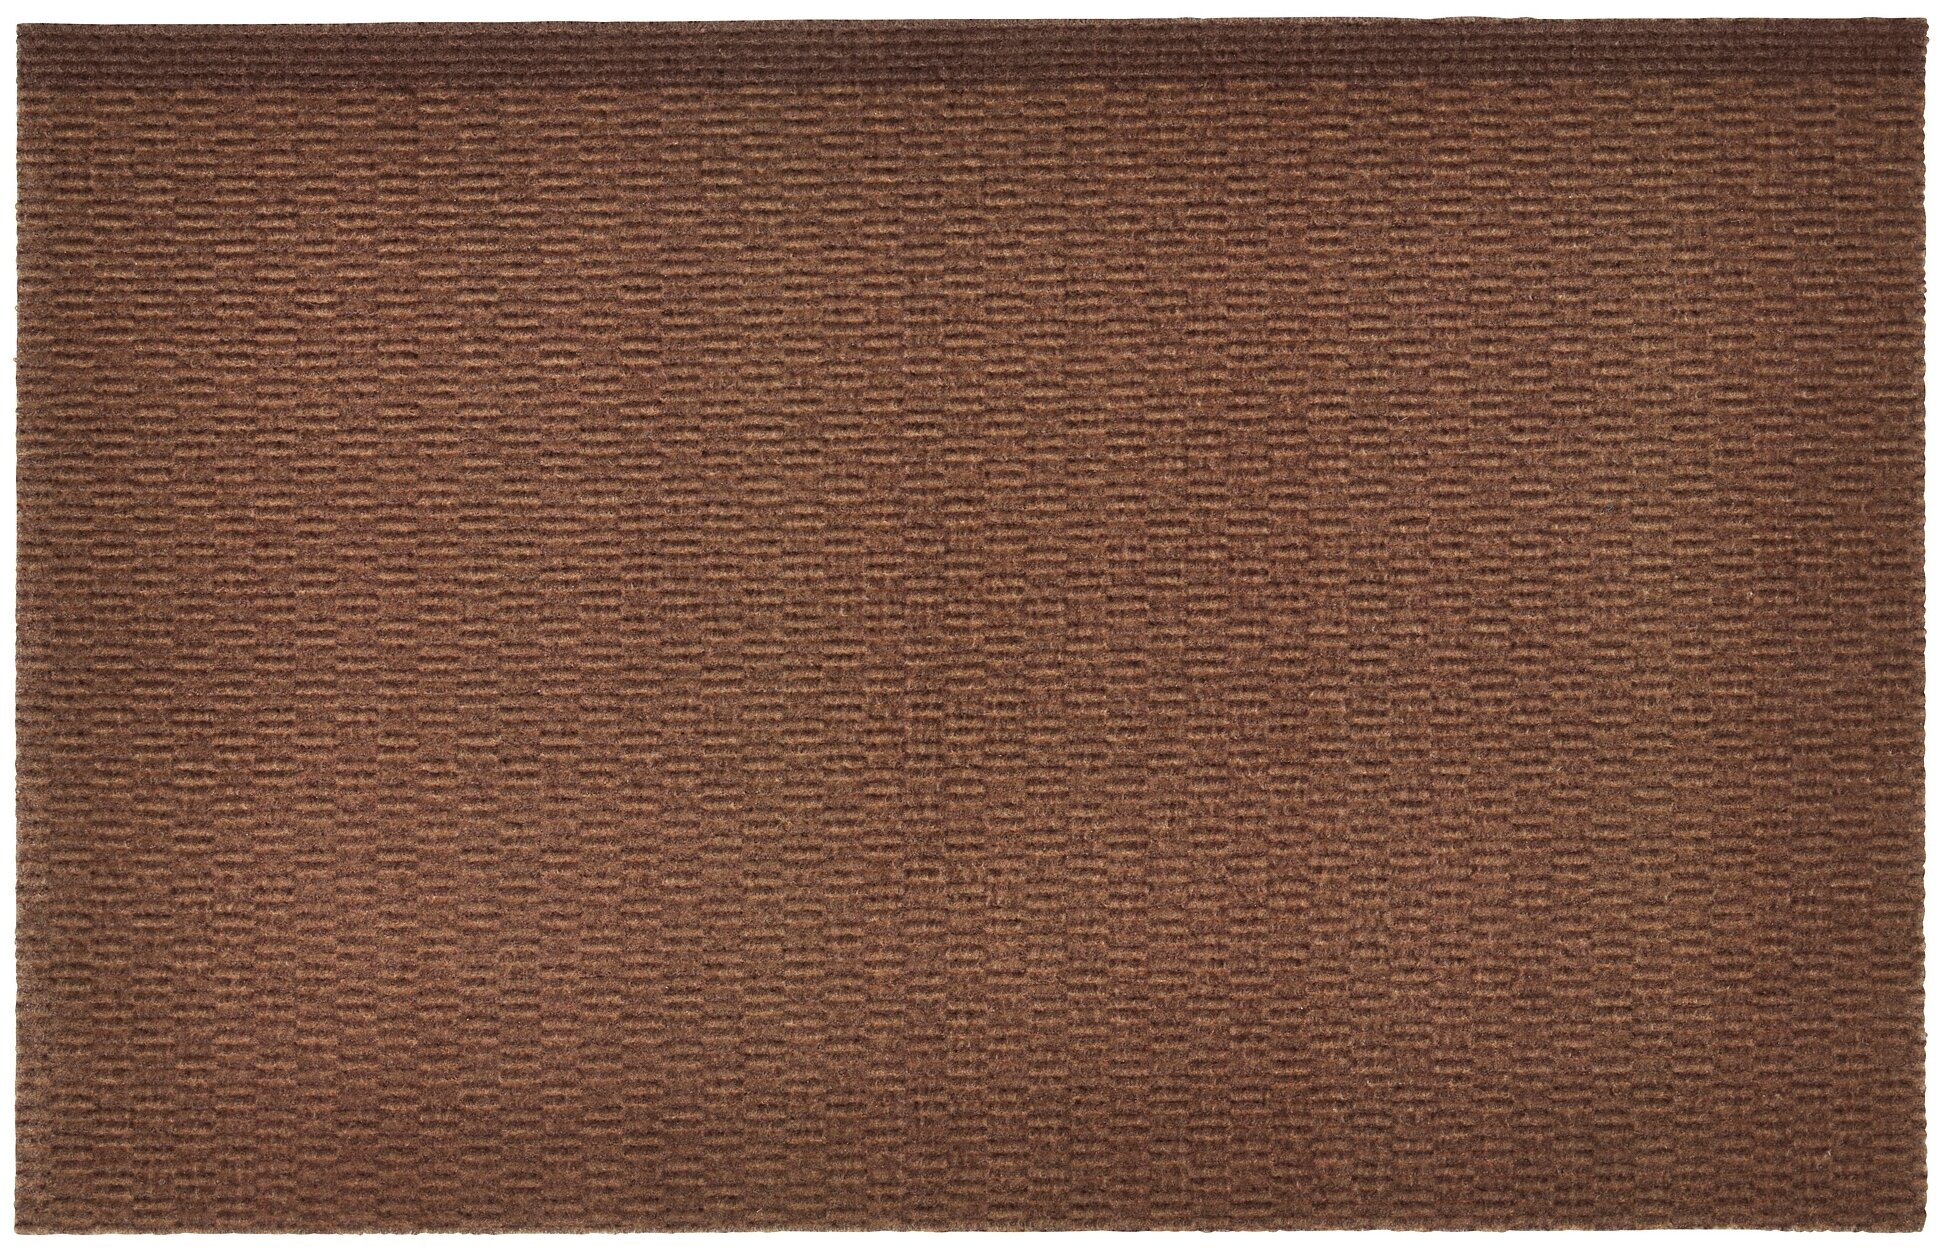 Придверный коврик ИКЕА КЛАМПЕНБОРГ, коричневый, 0.55 х 0.35 м